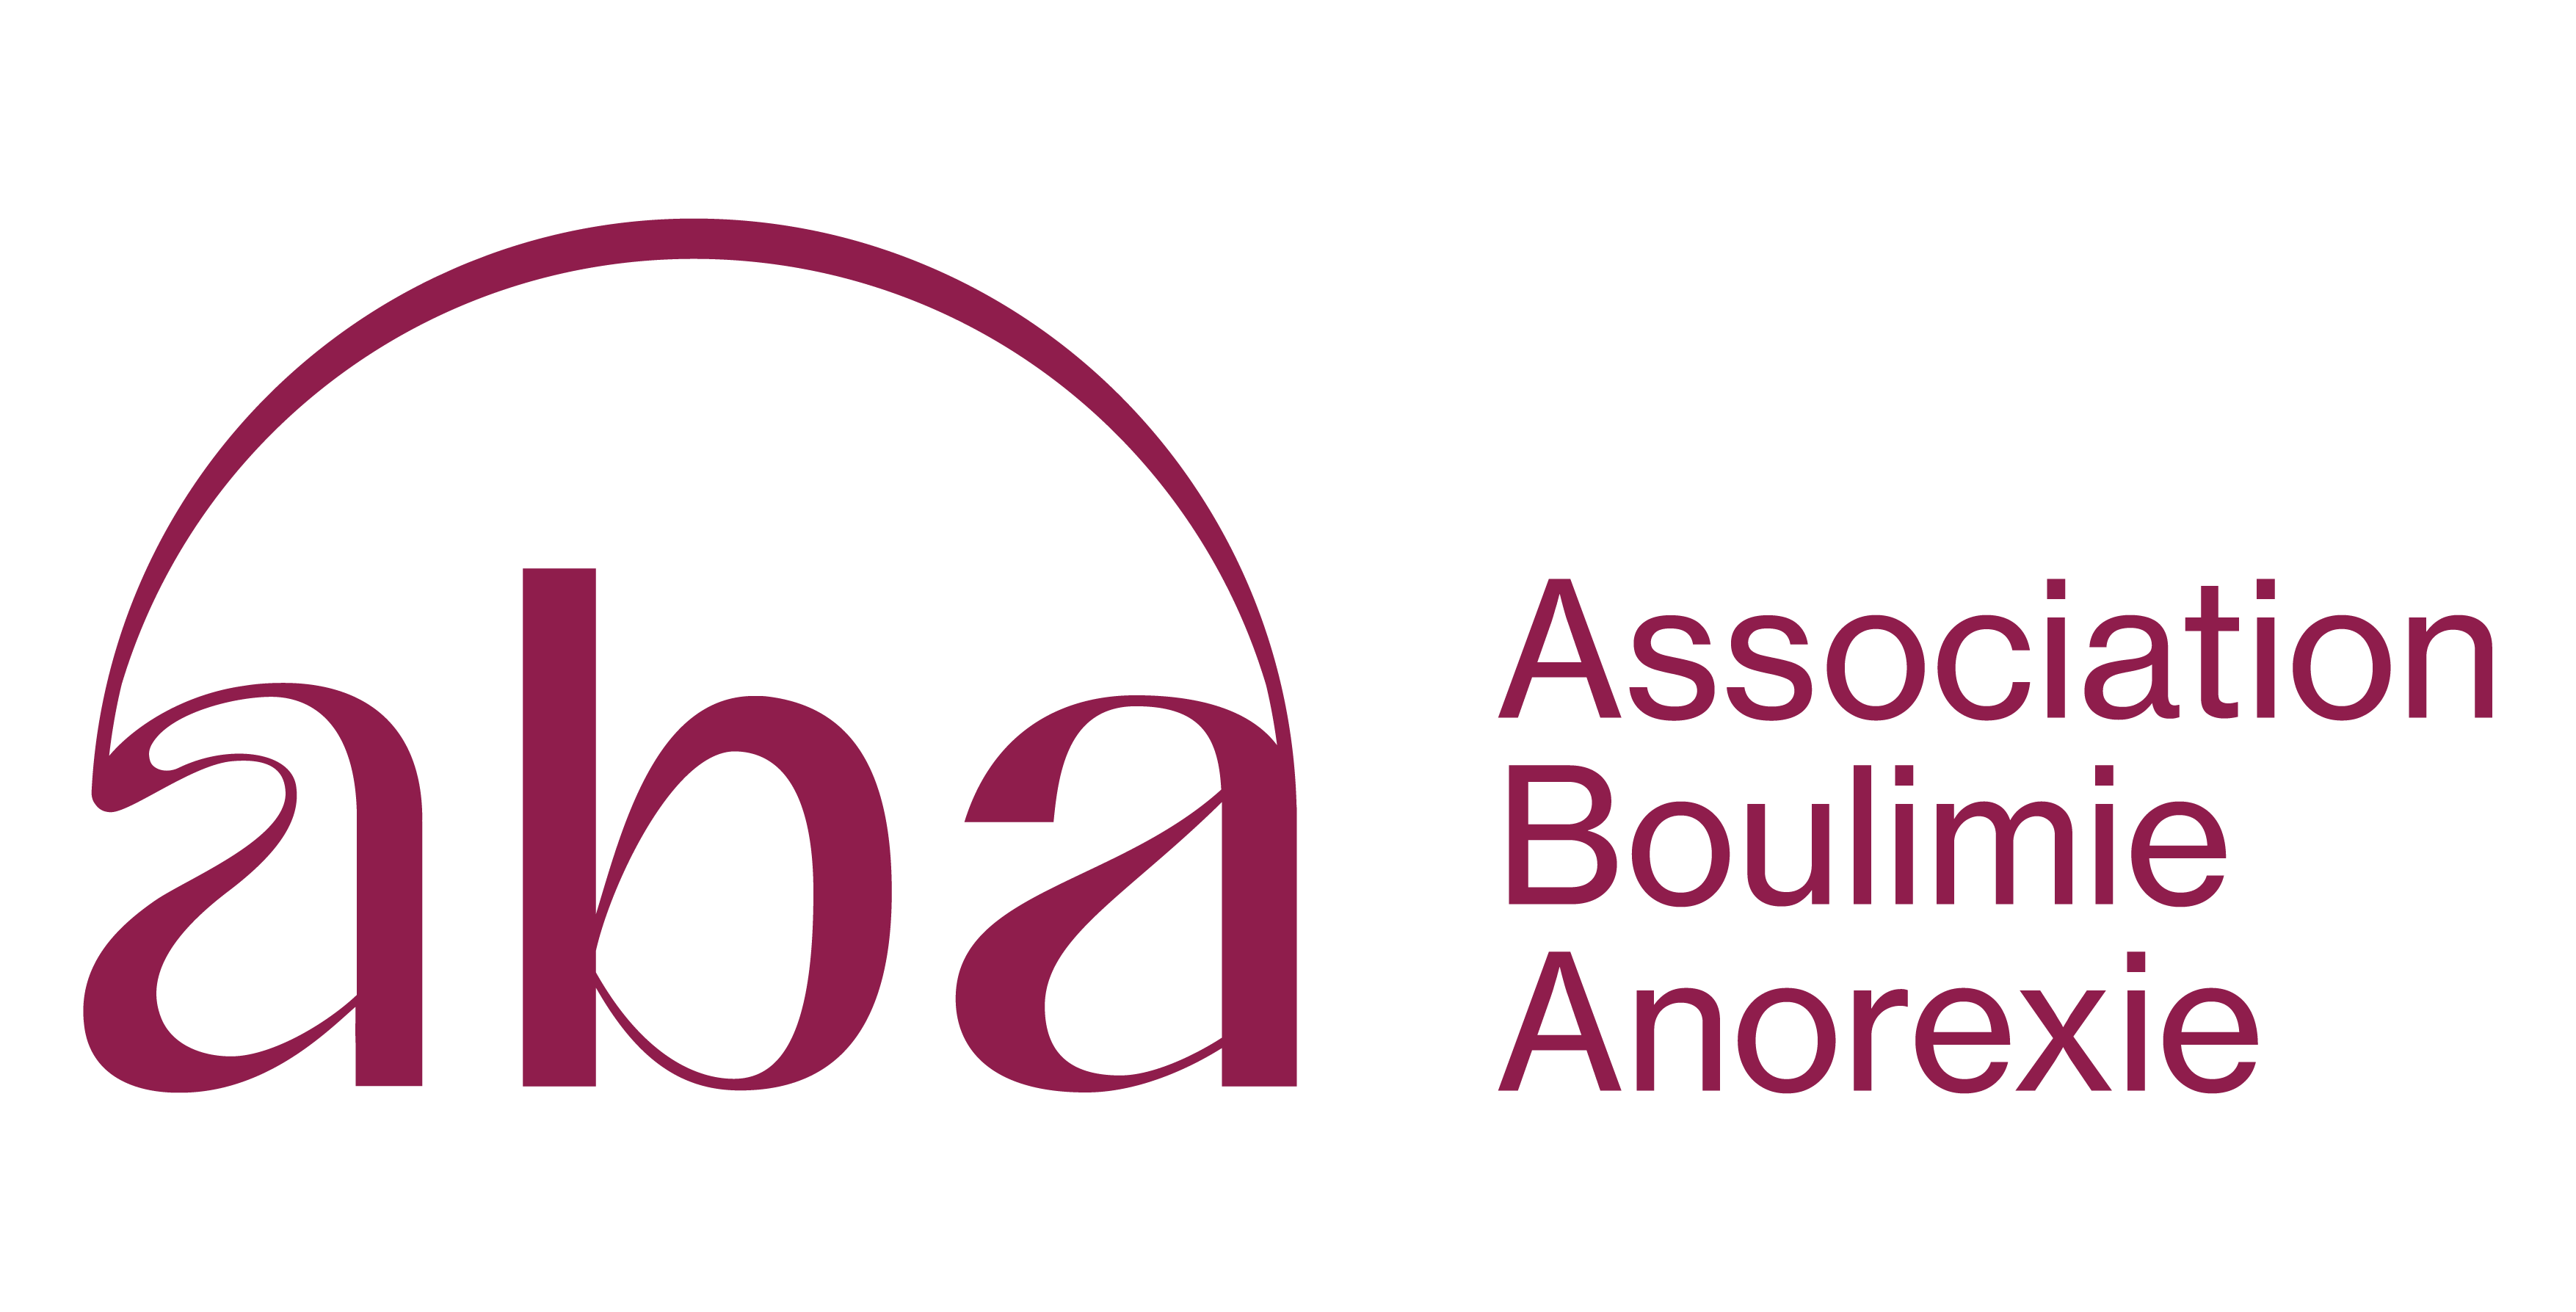 Association Boulimie Anorexie